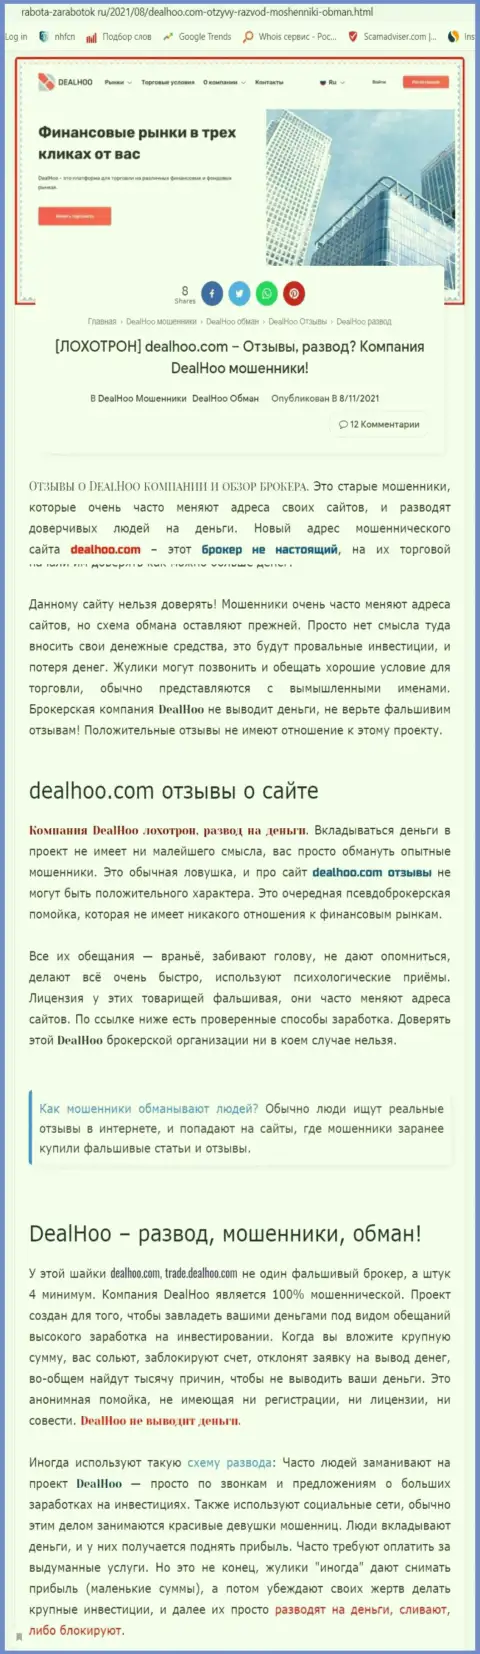 DealHoo Com - это МОШЕННИКИ !!! Обзор неправомерных действий организации и отзывы потерпевших